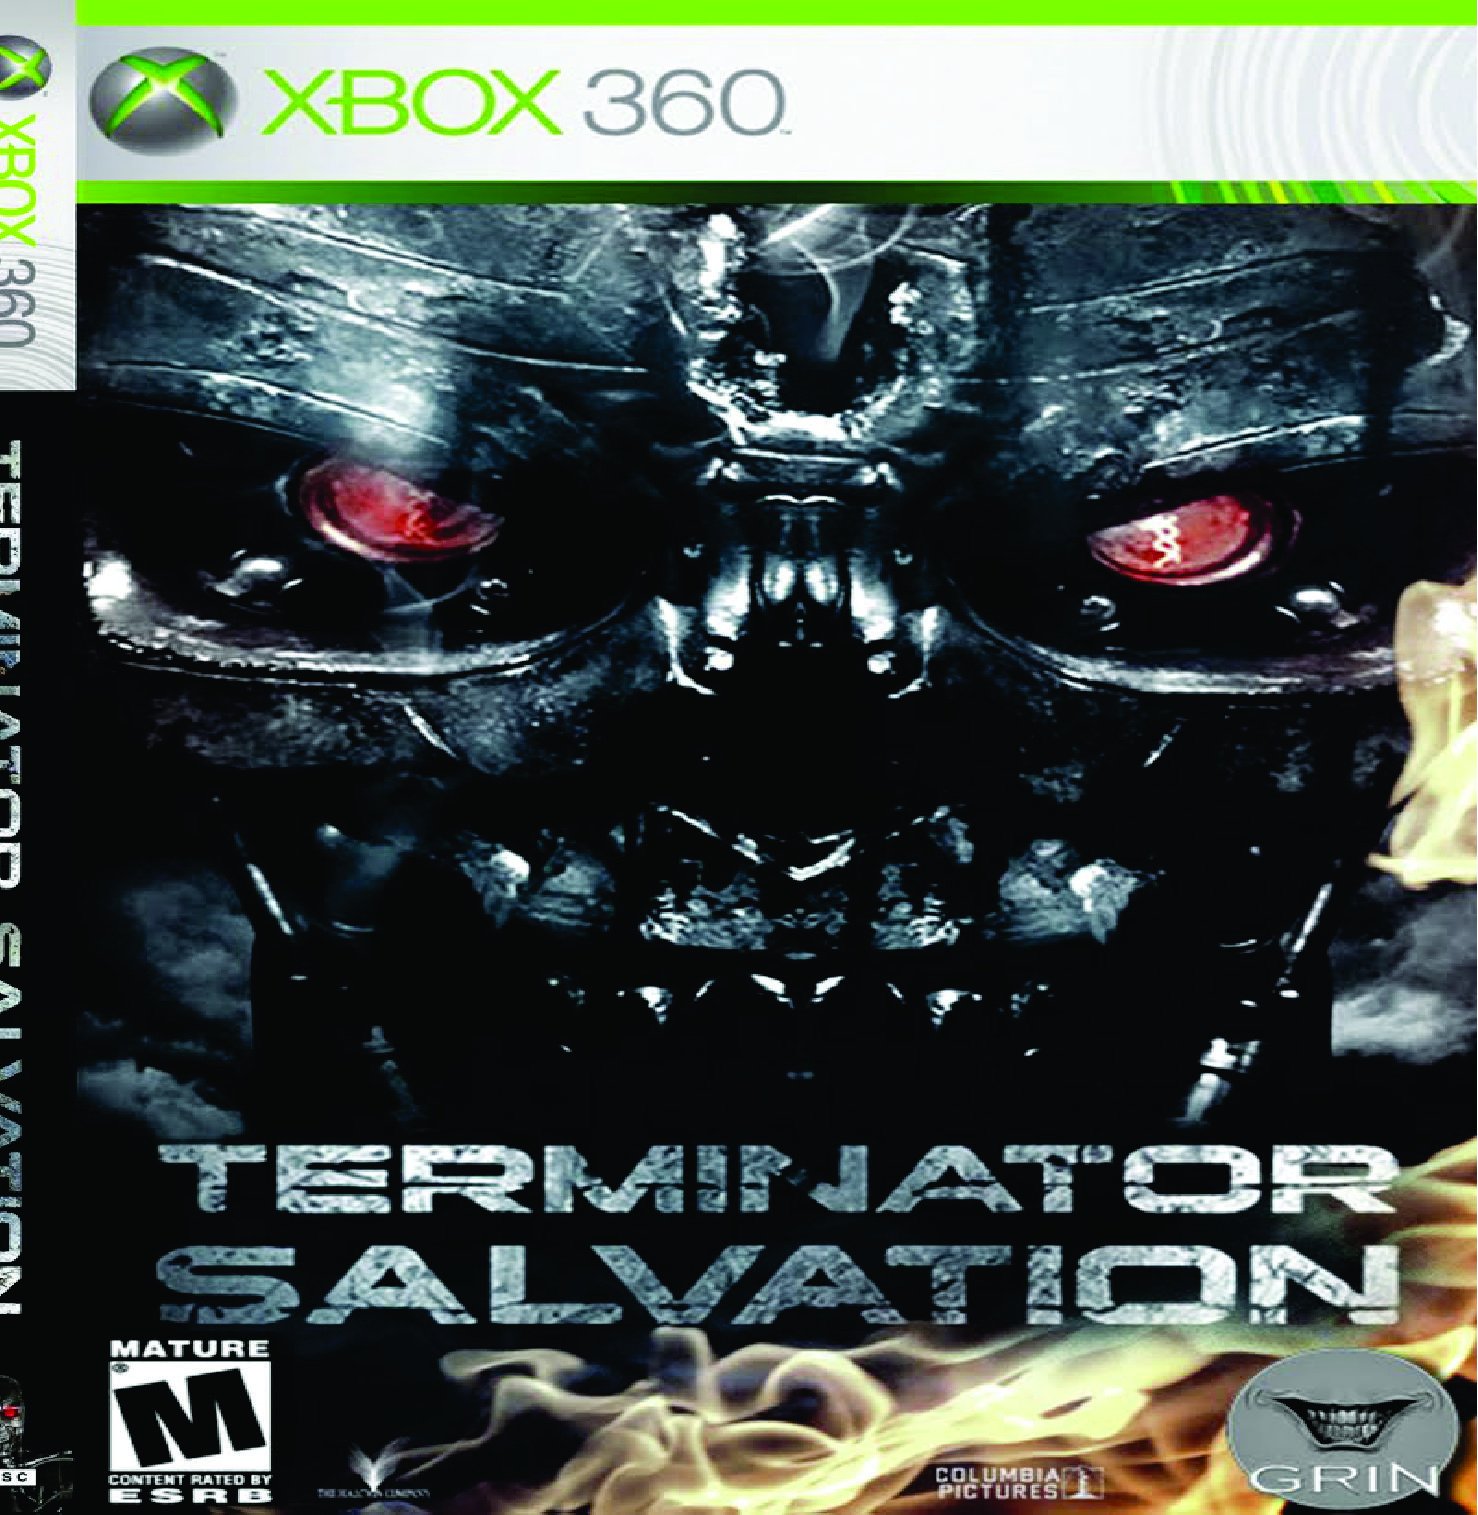 Terminator Salvation - Xbox 360 em Promoção na Americanas